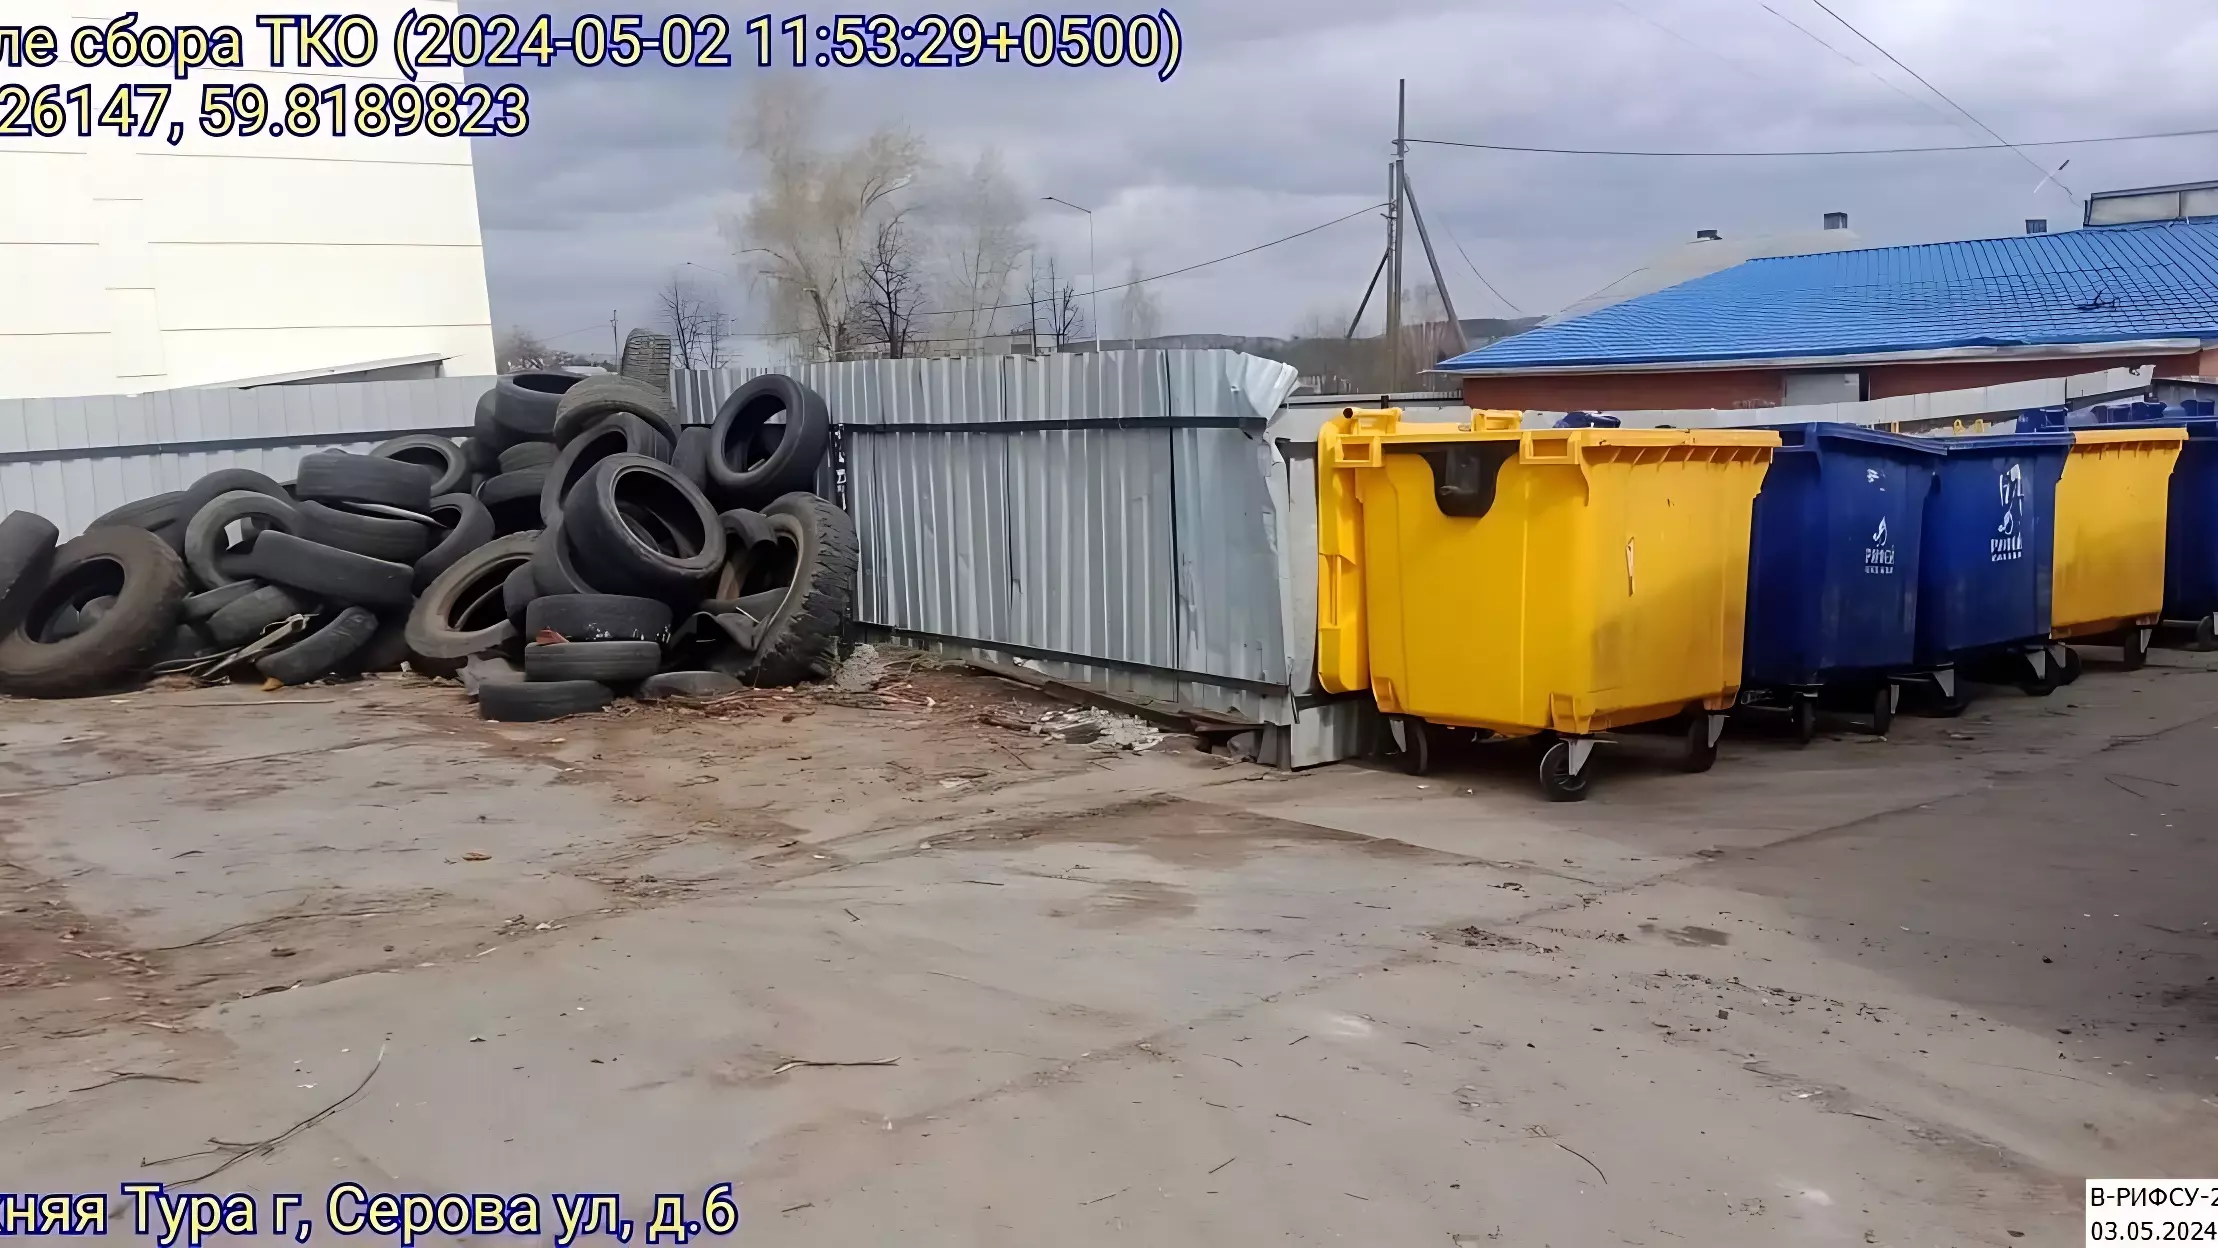 Количество крупногабаритных отходов в Свердловской области увеличилось вдвое